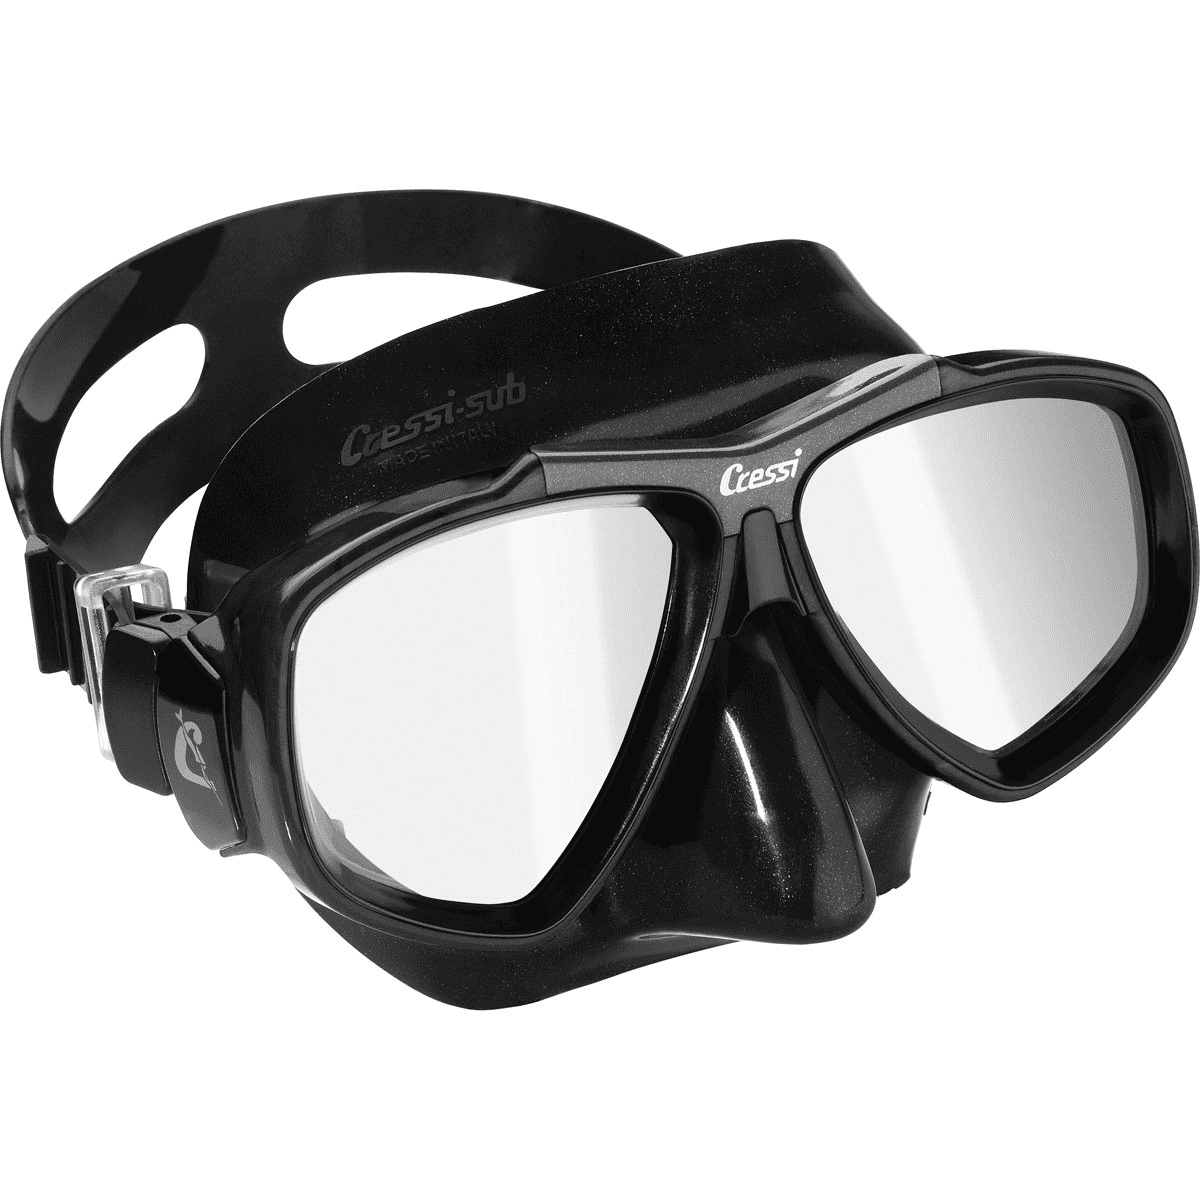 Hængsel Bandit tak skal du have Cressi Focus Snorkeling Dive Mask - Walmart.com